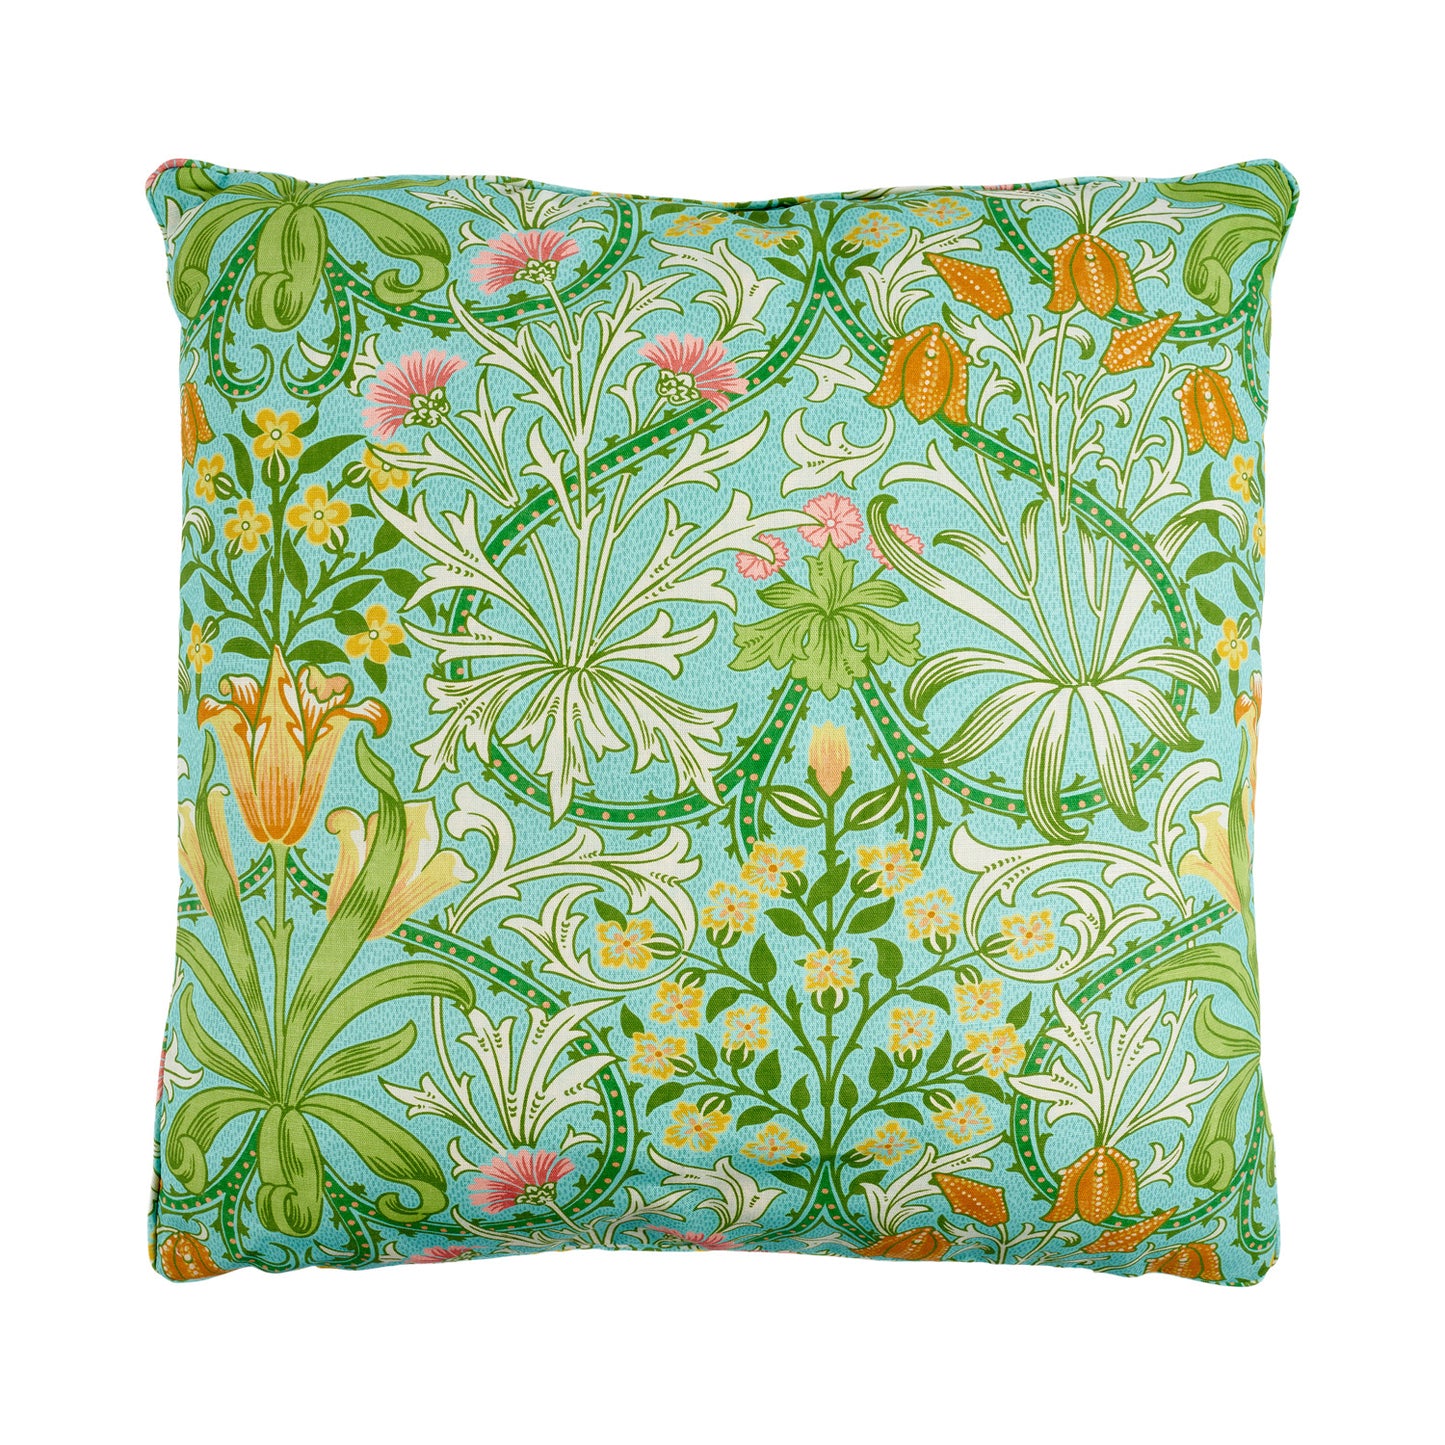 'Woodland Weeds' Orange/Turquoise Cushion - Cornubia Collection